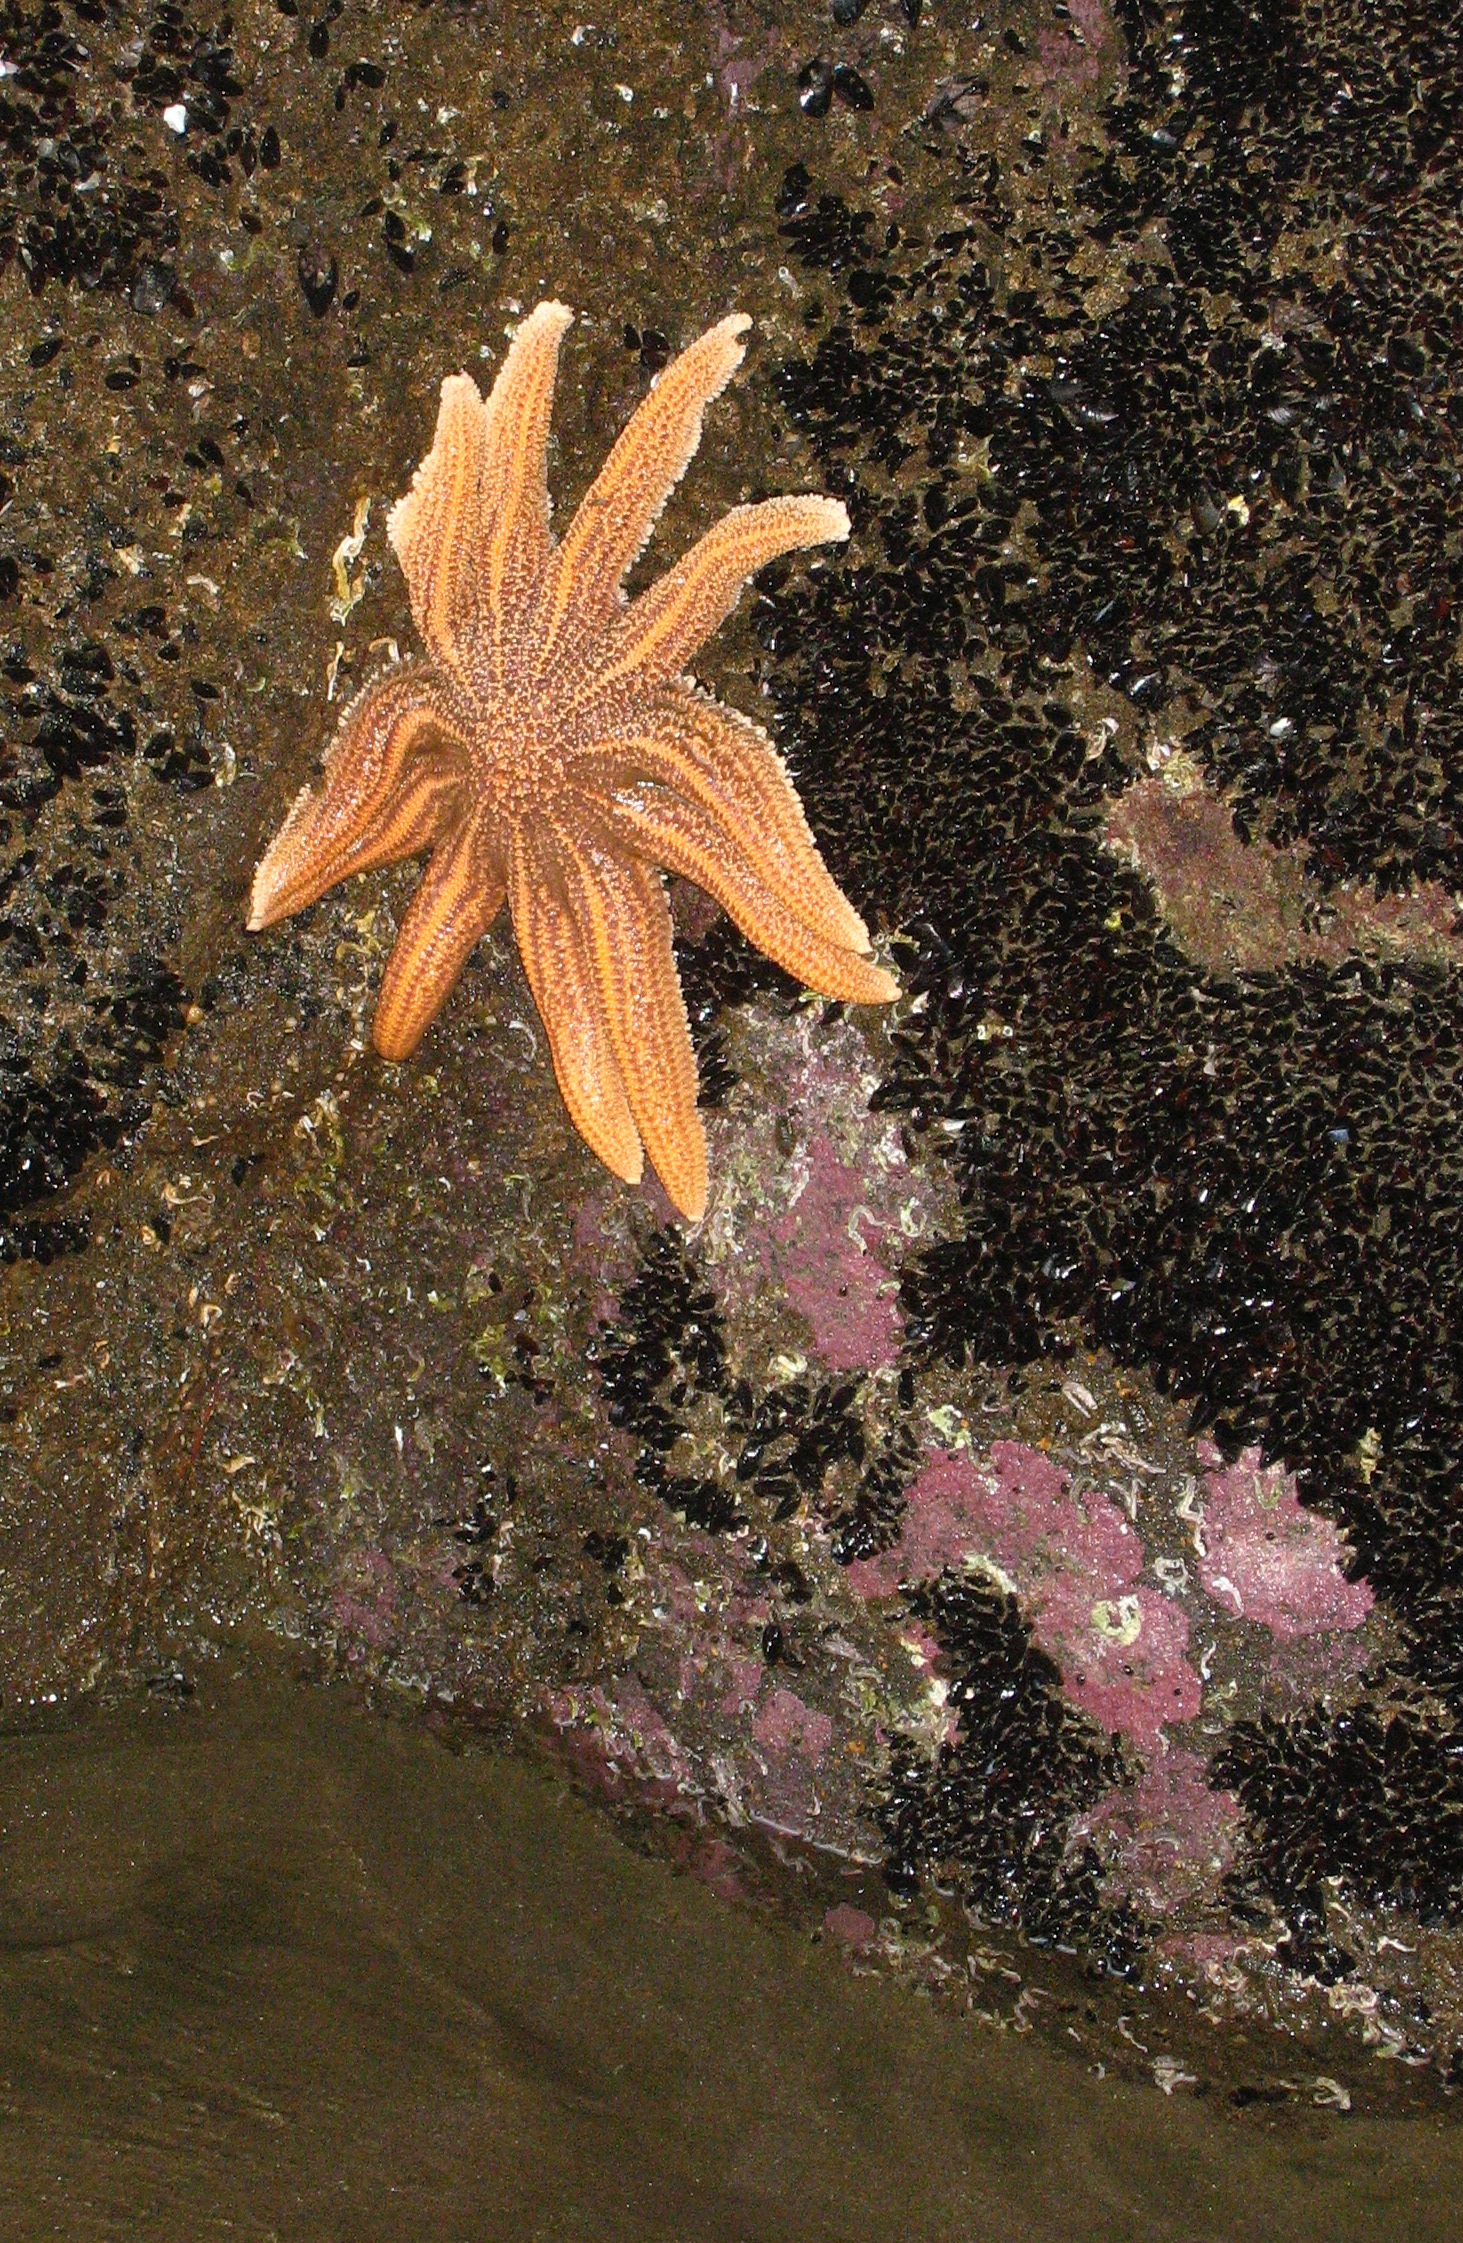 Reef starfish (Stichaster australis) at Muriwai